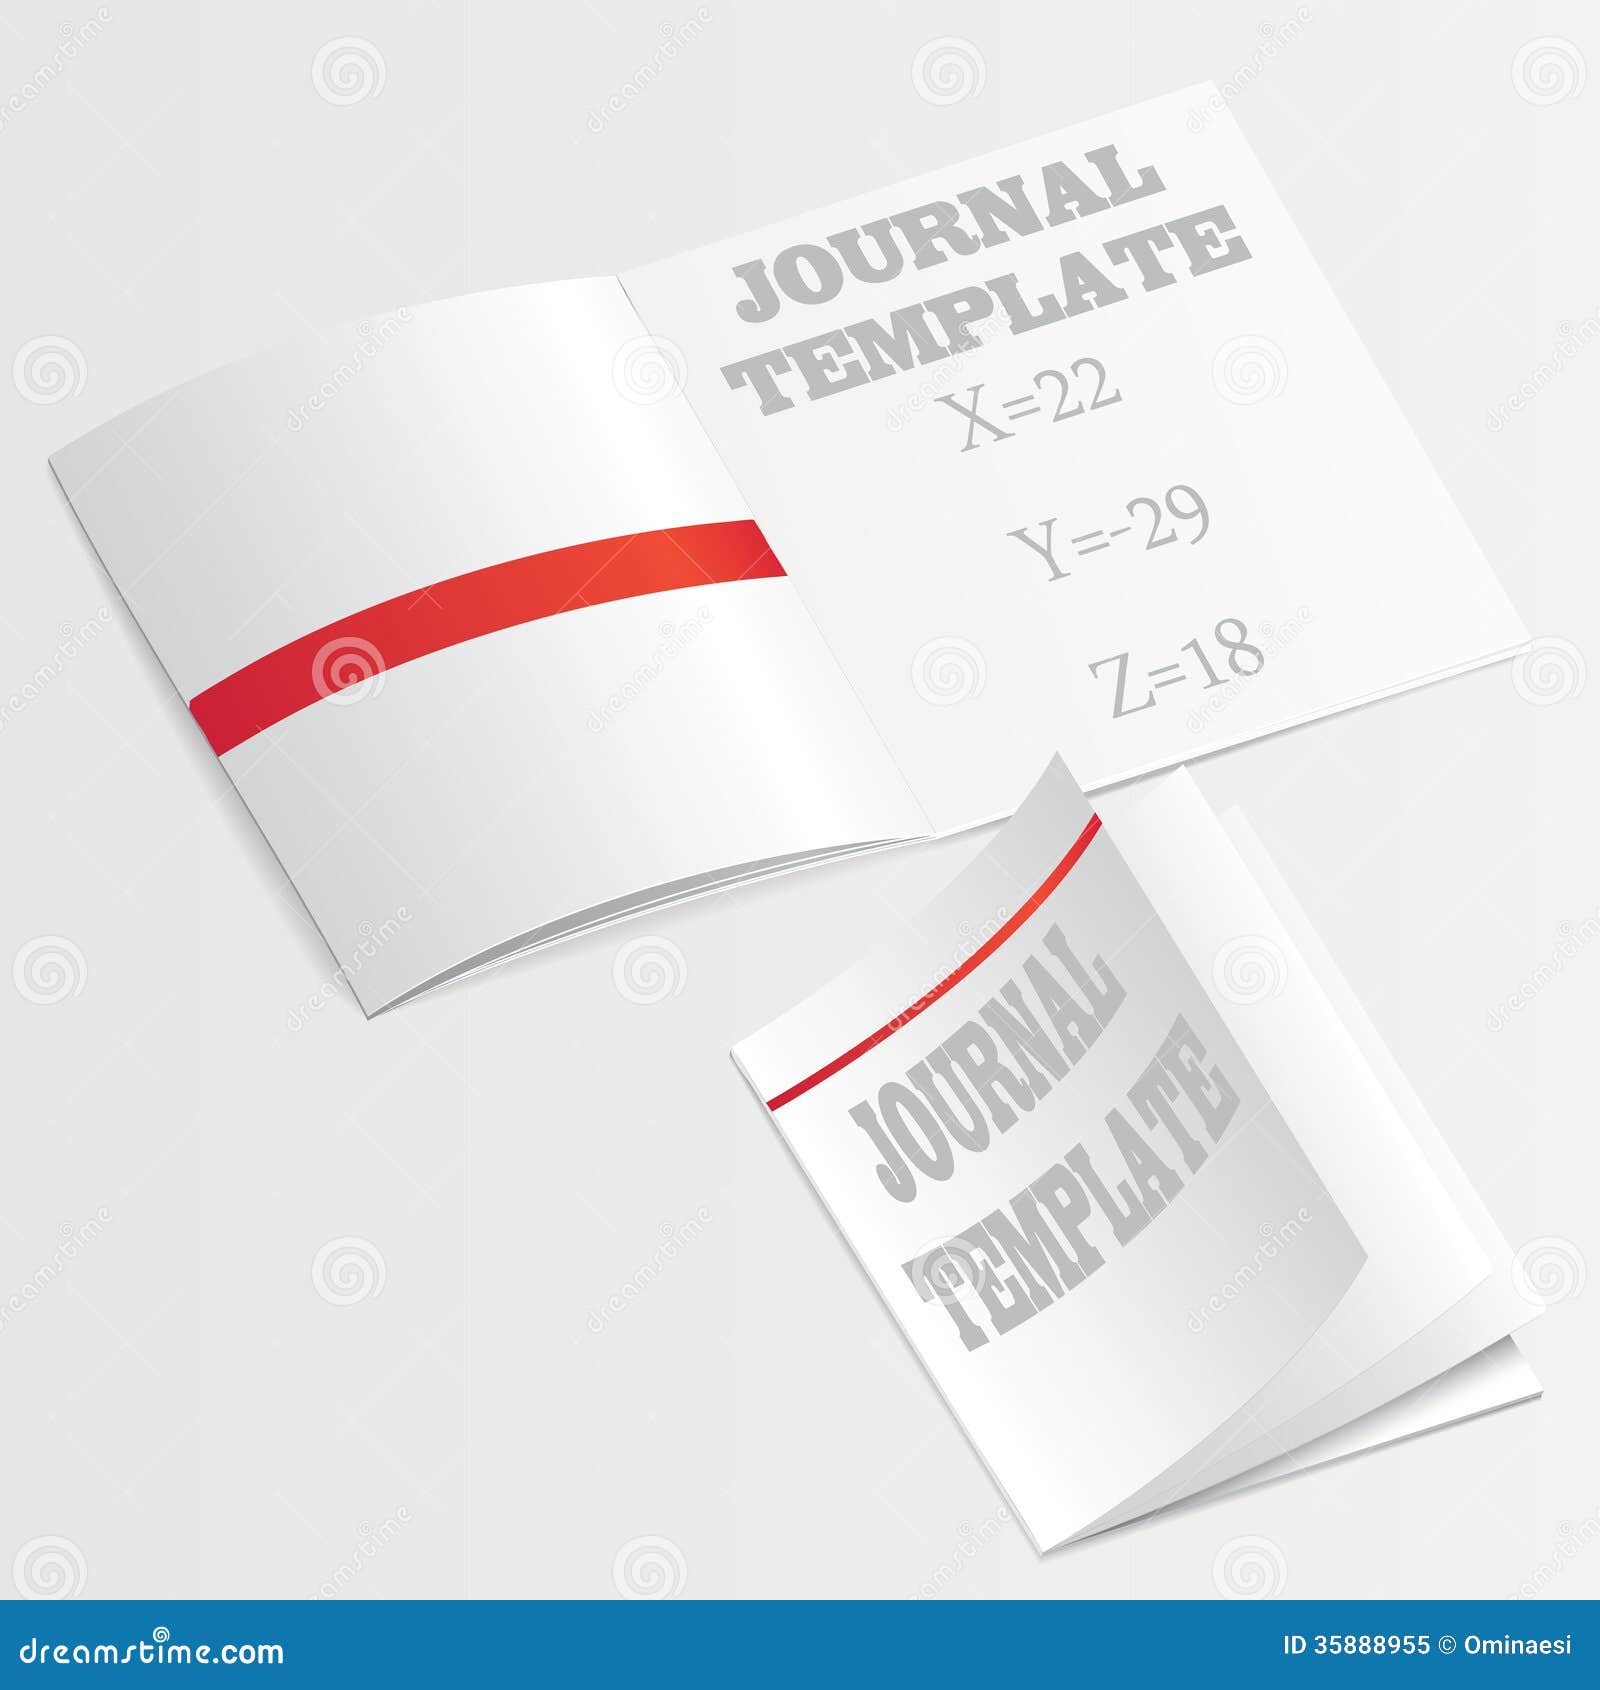 Journal template vector stock illustration. Illustration of journal